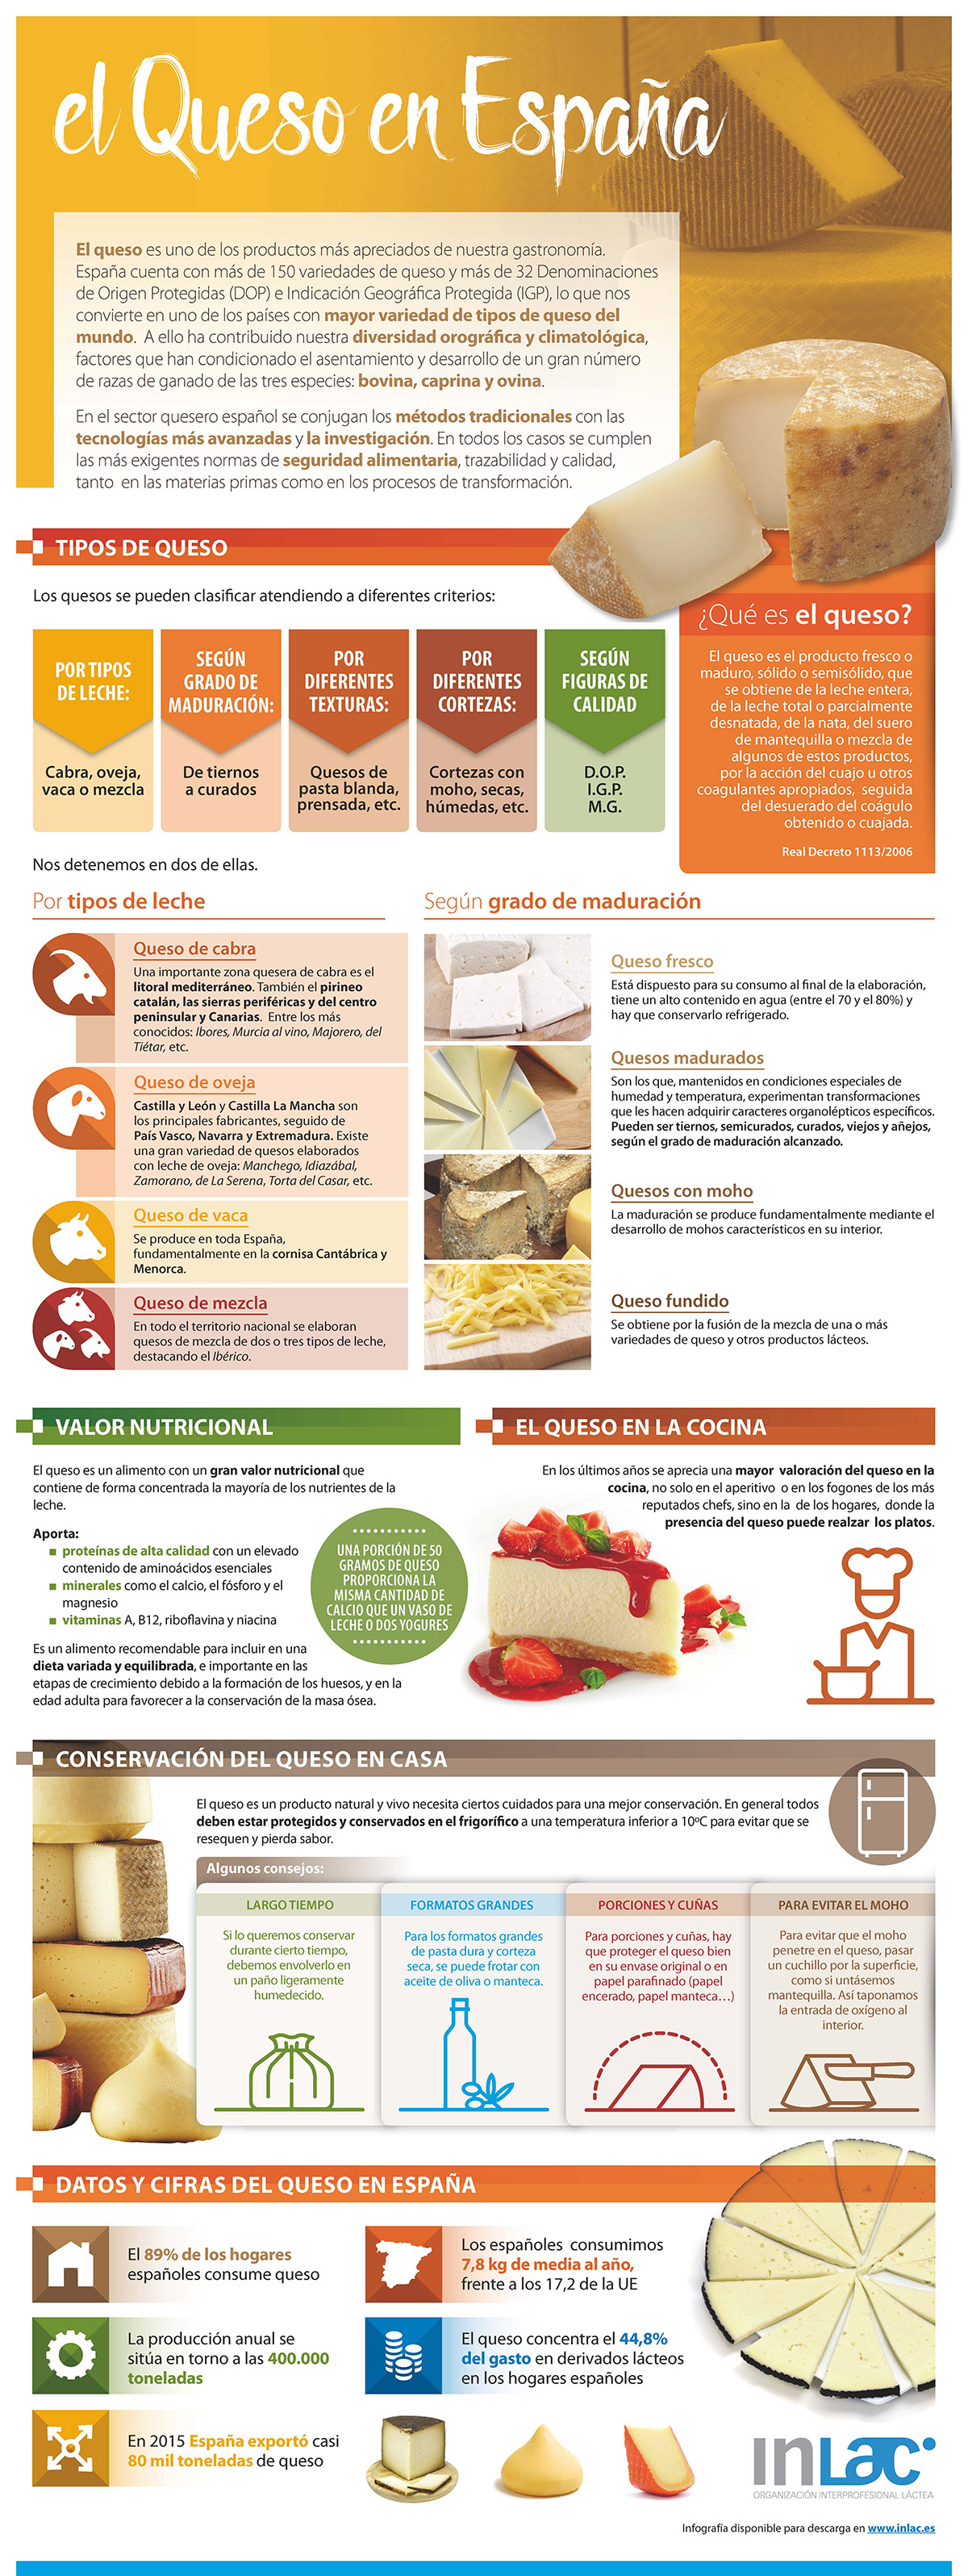 Infografa Inlac: Espaa, un pas de quesos